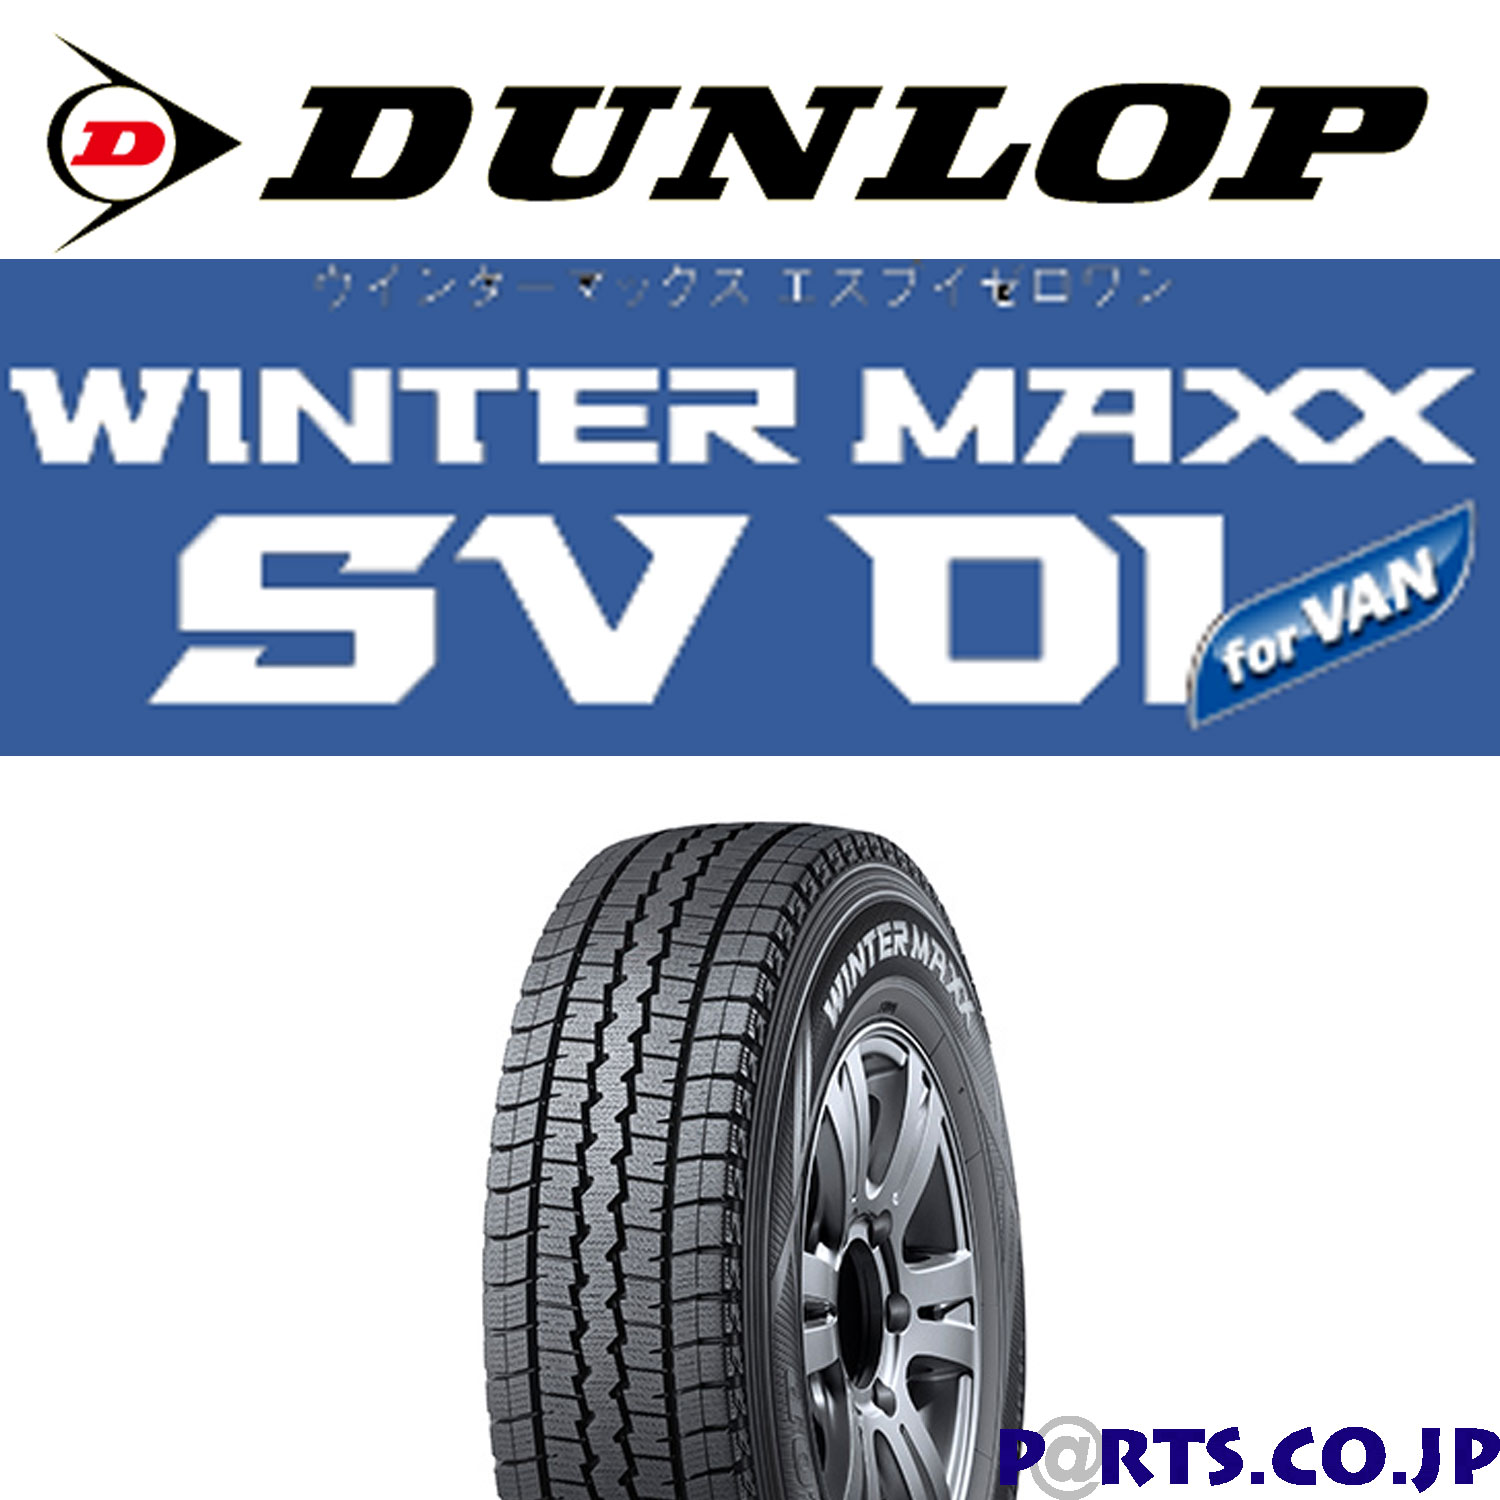 【タイヤ交換対象】WINTER MAXX SV01 185R14 6PR スタッドレスタイヤ